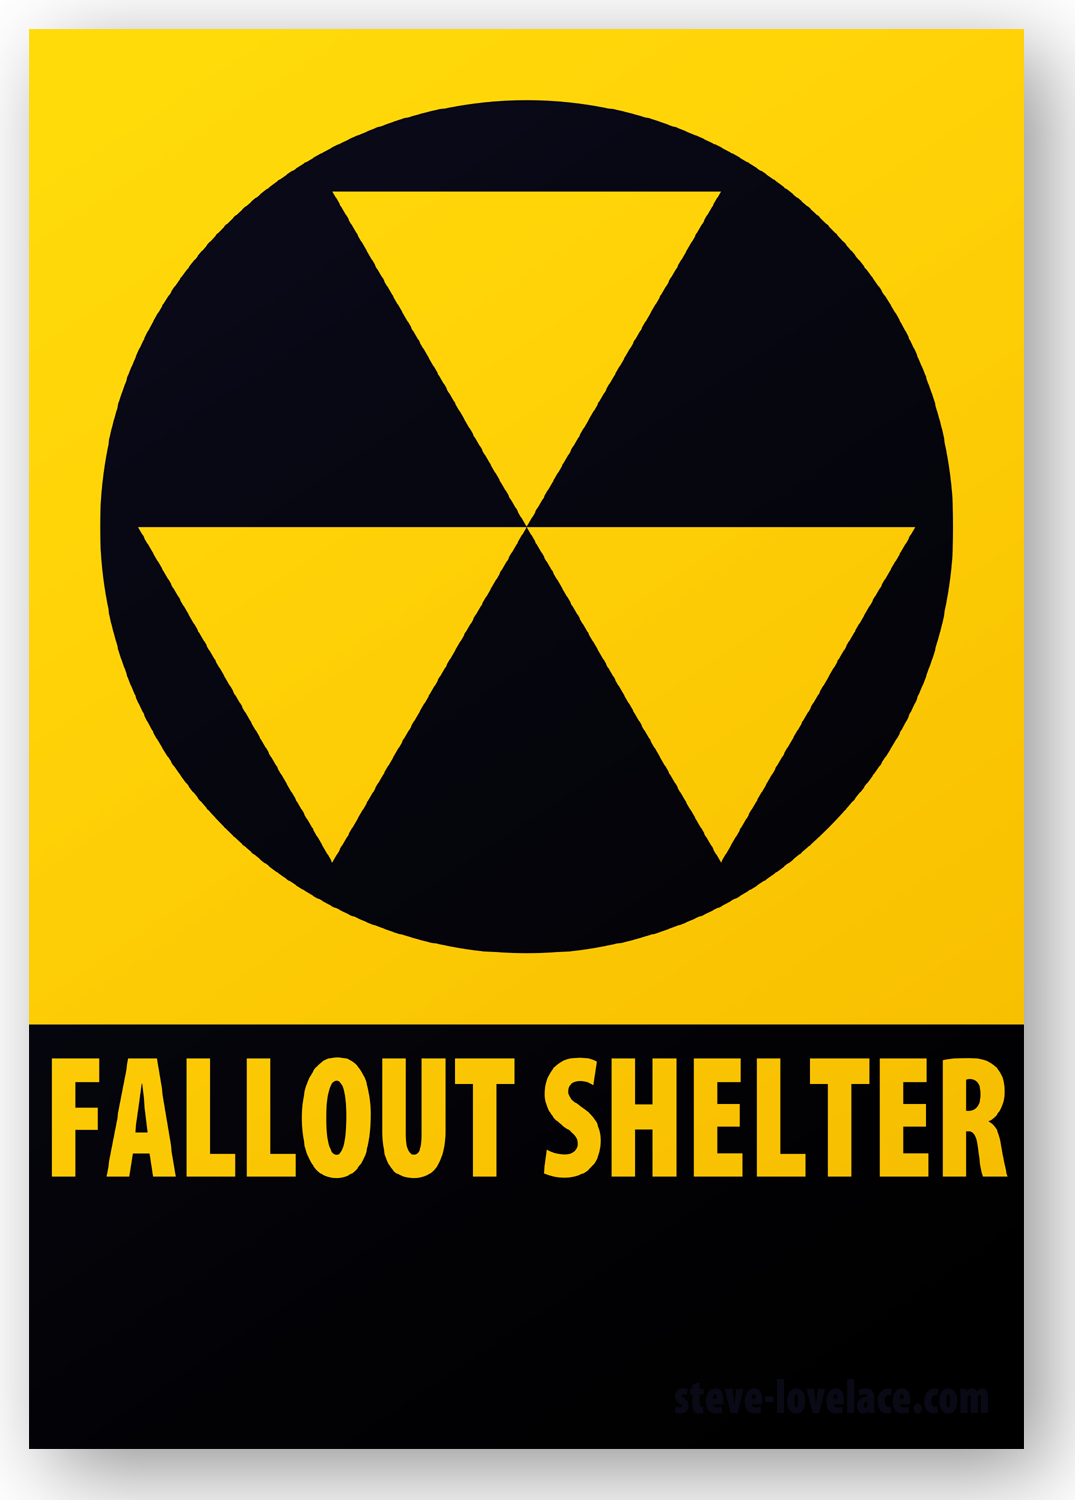 The Fallout Shelter Sign — Steve Lovelace